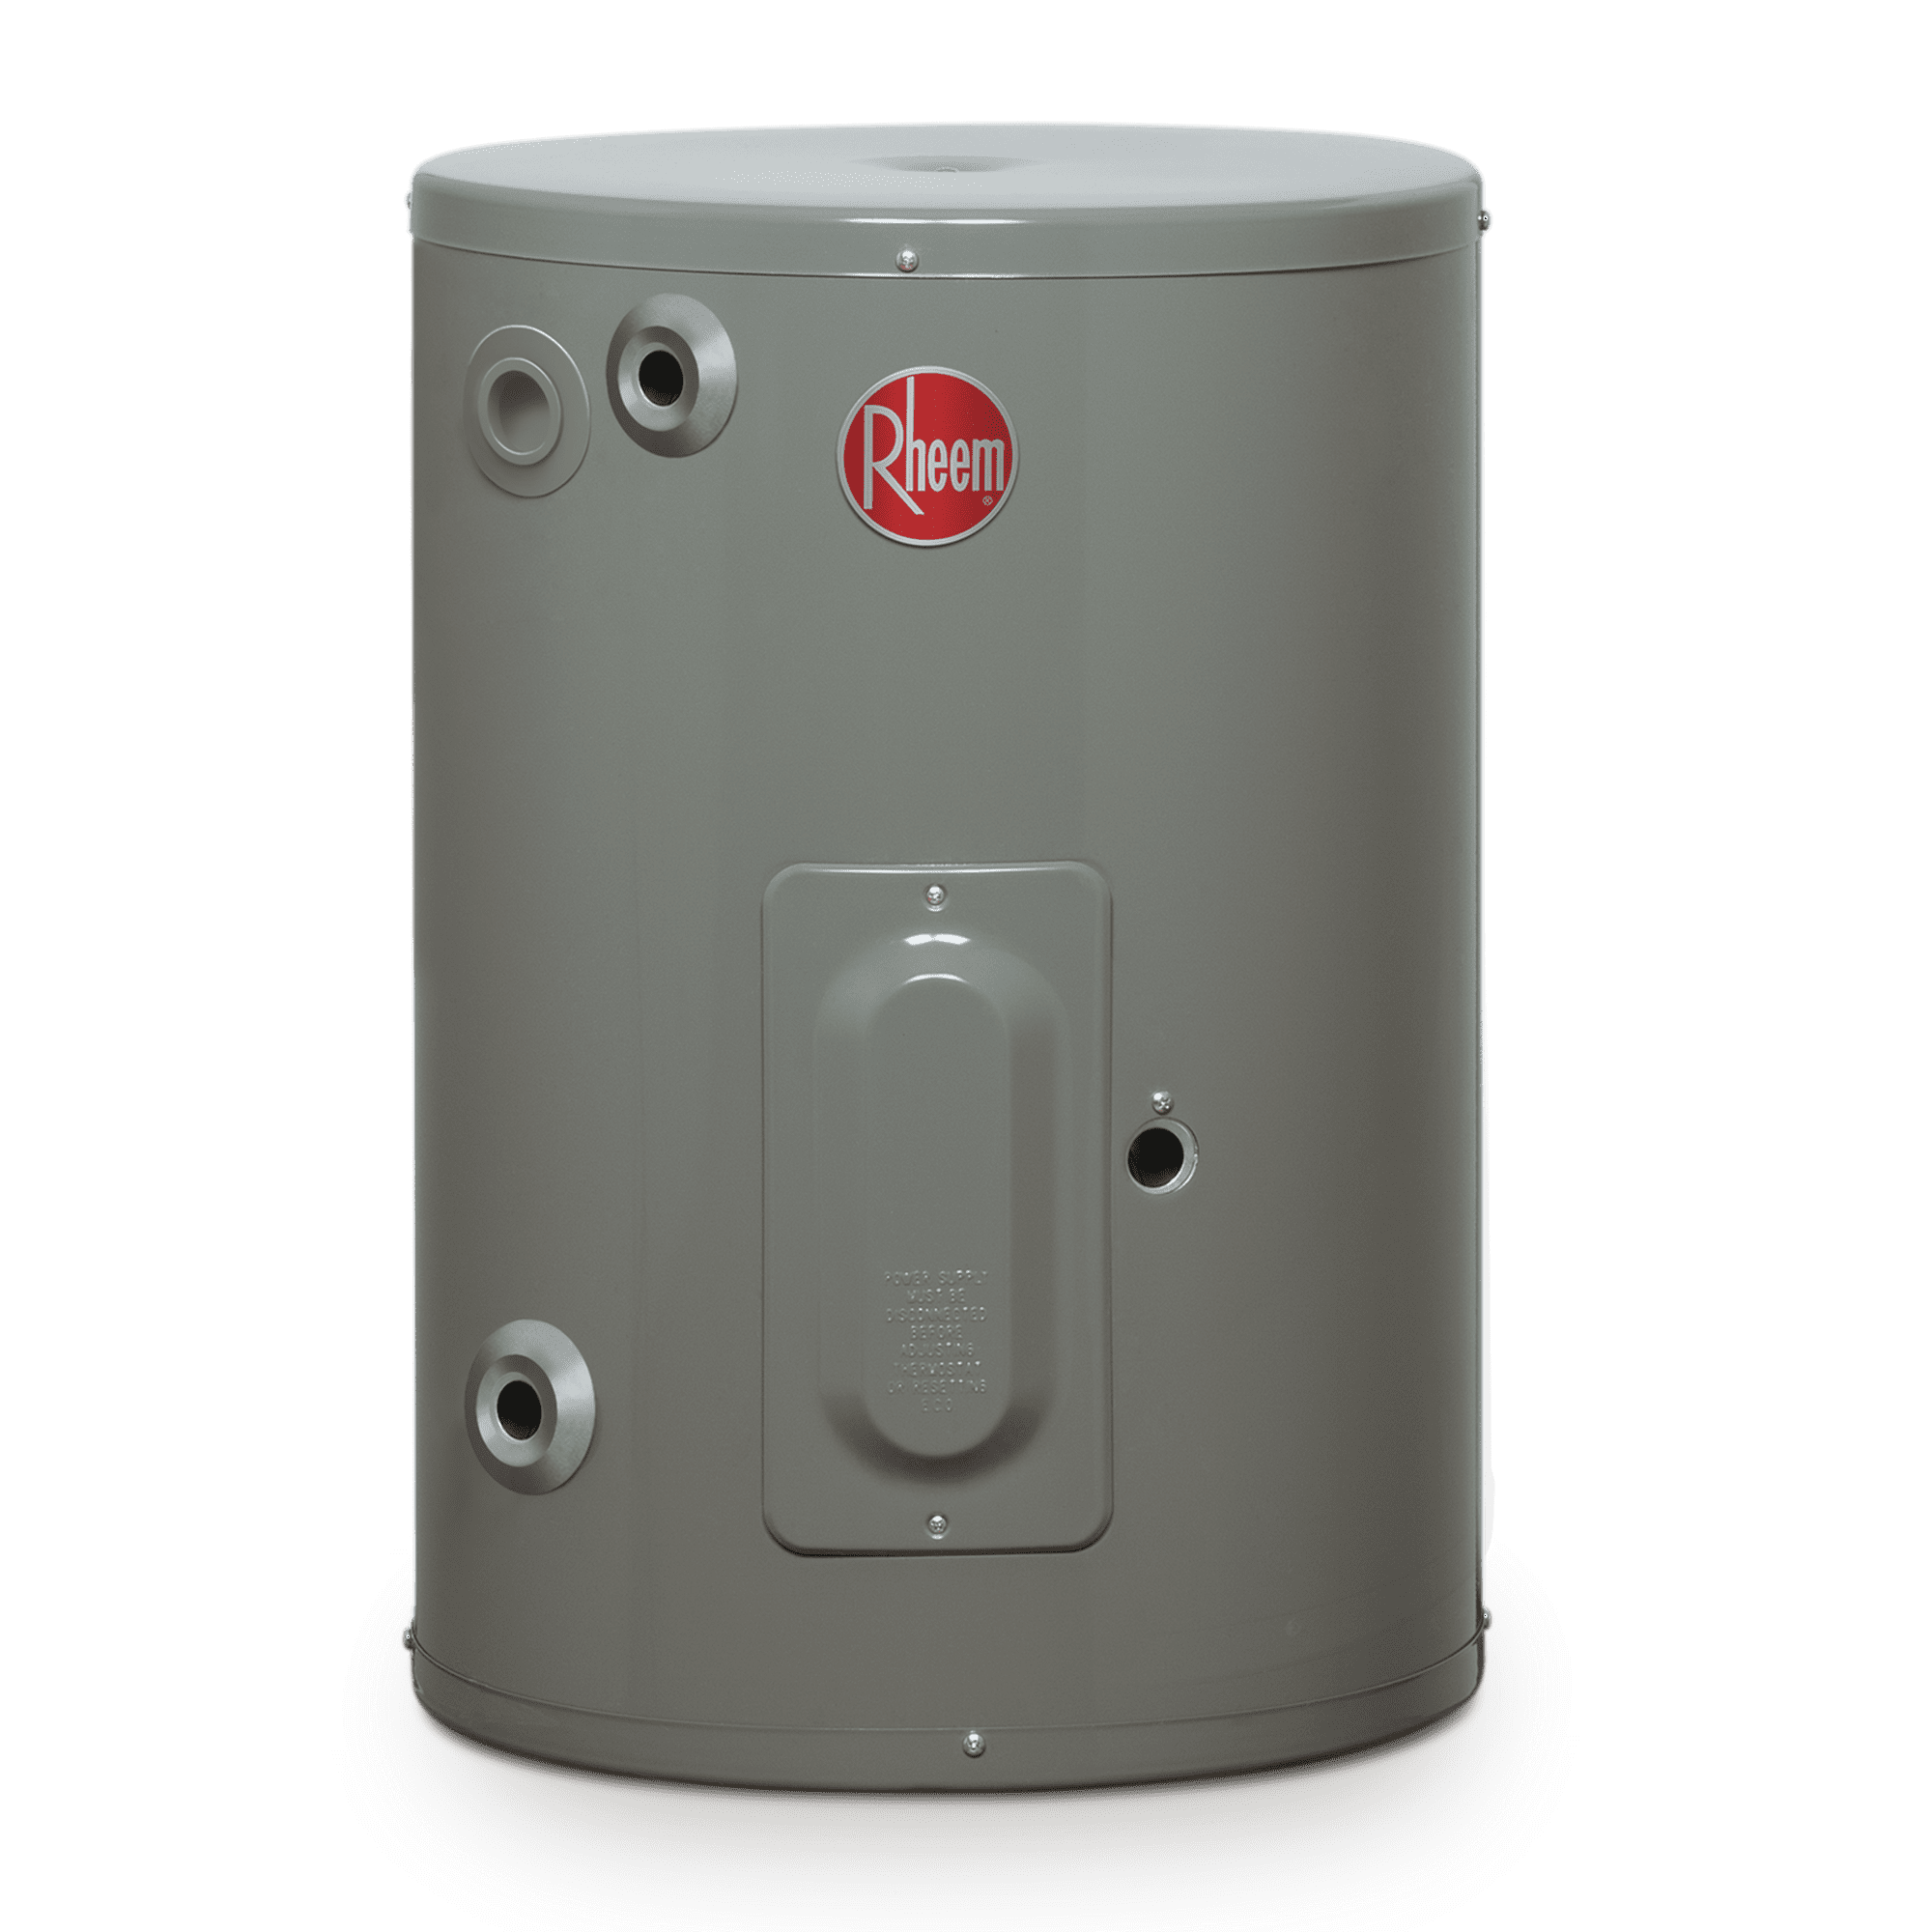 Calentador De Agua Portatil 110v Resistencia Electrica